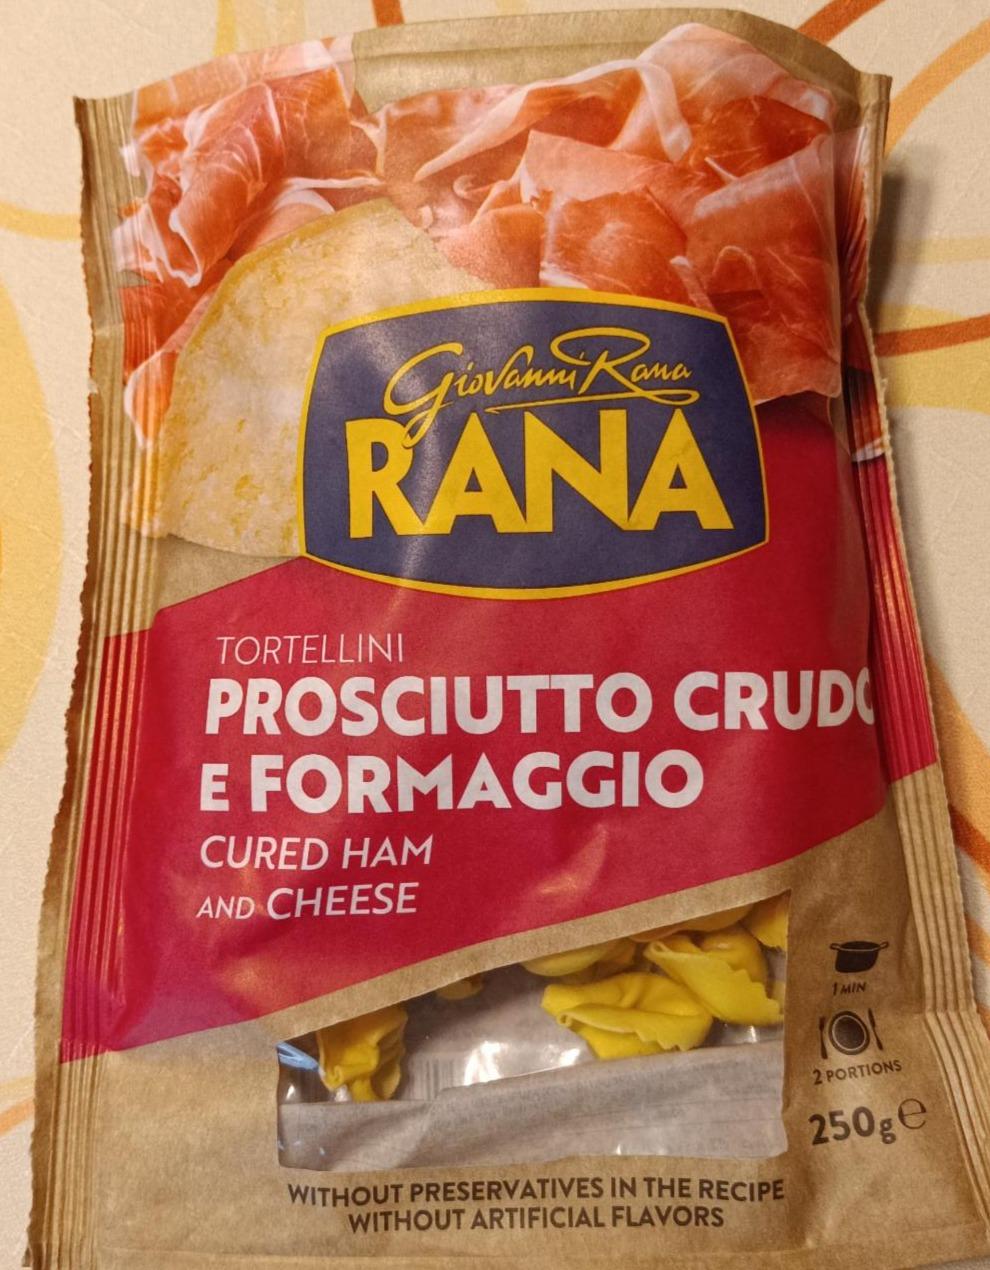 Képek - Tortellini Prosciutto crudo e formaggio Giovanni Rana